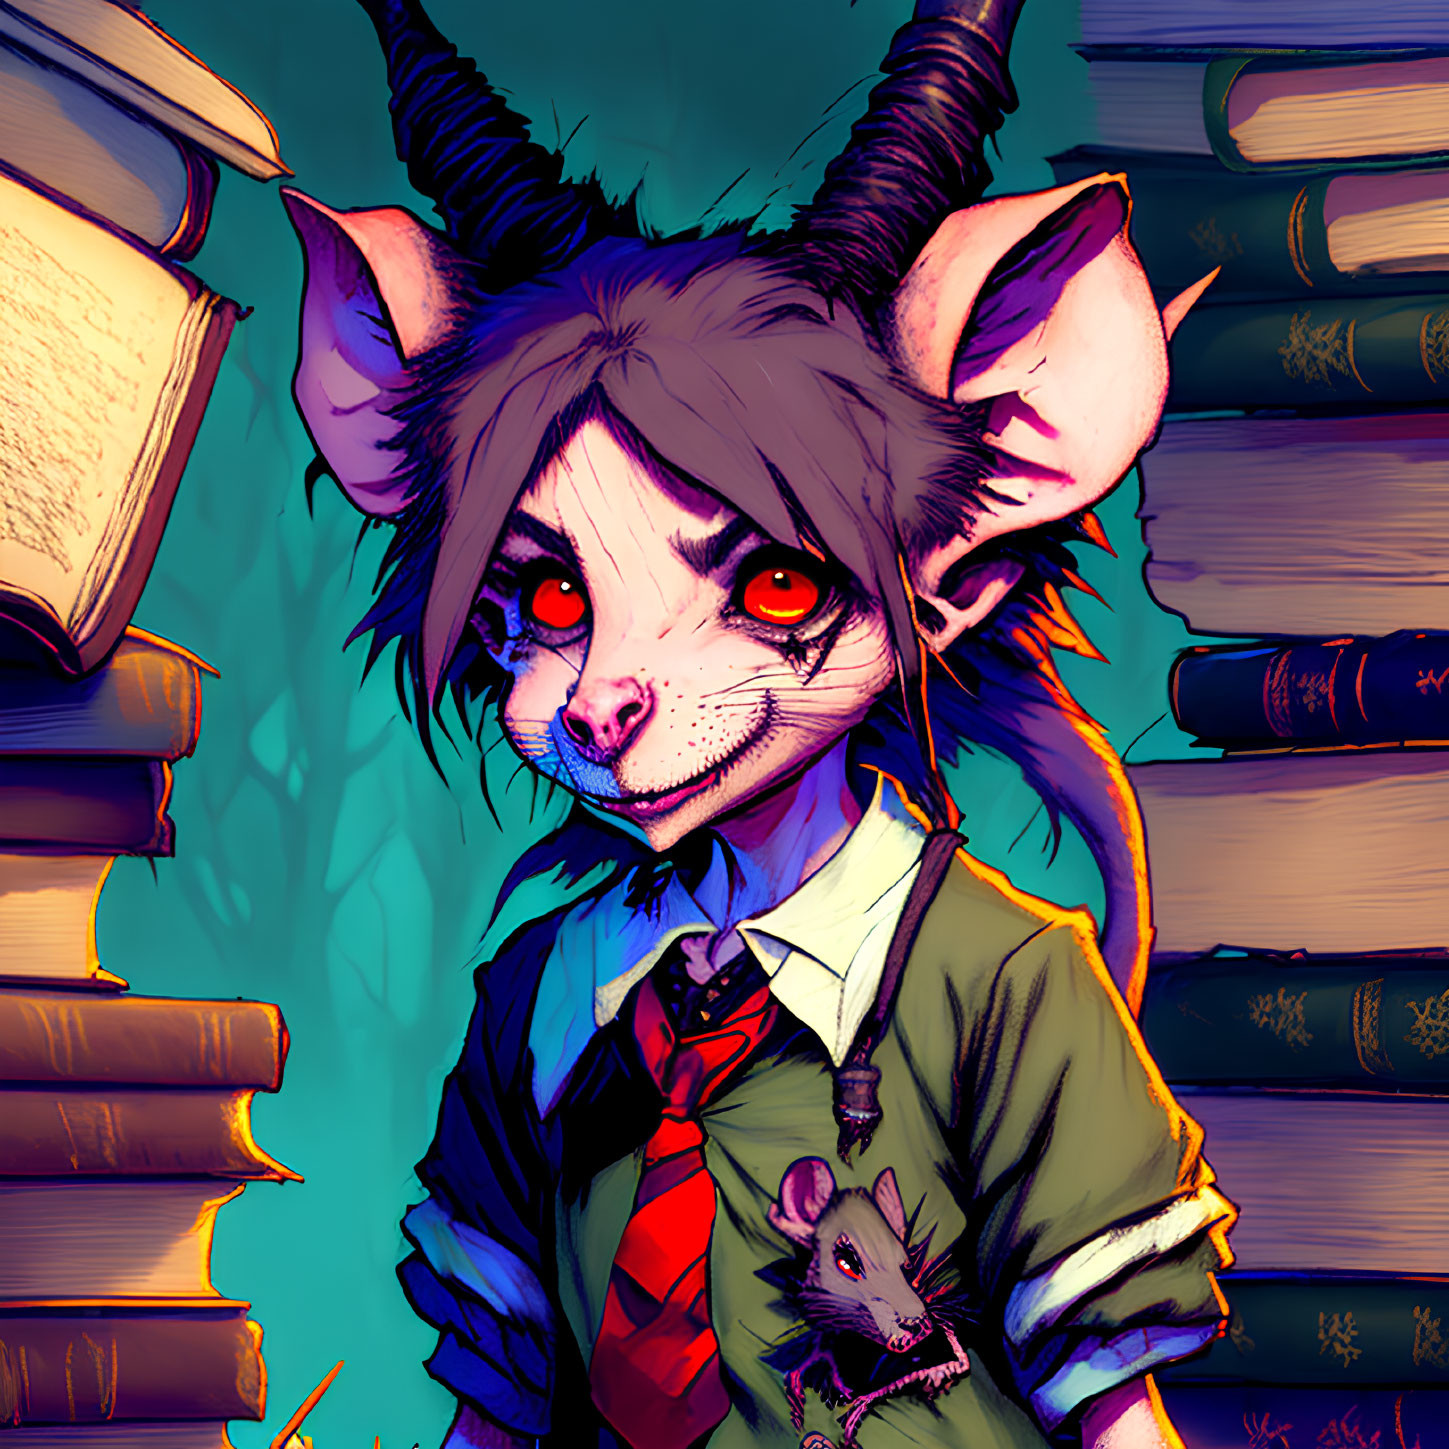 Anthropomorphic rat with red eyes, dark hair, in shirt, tie, vest, near stack